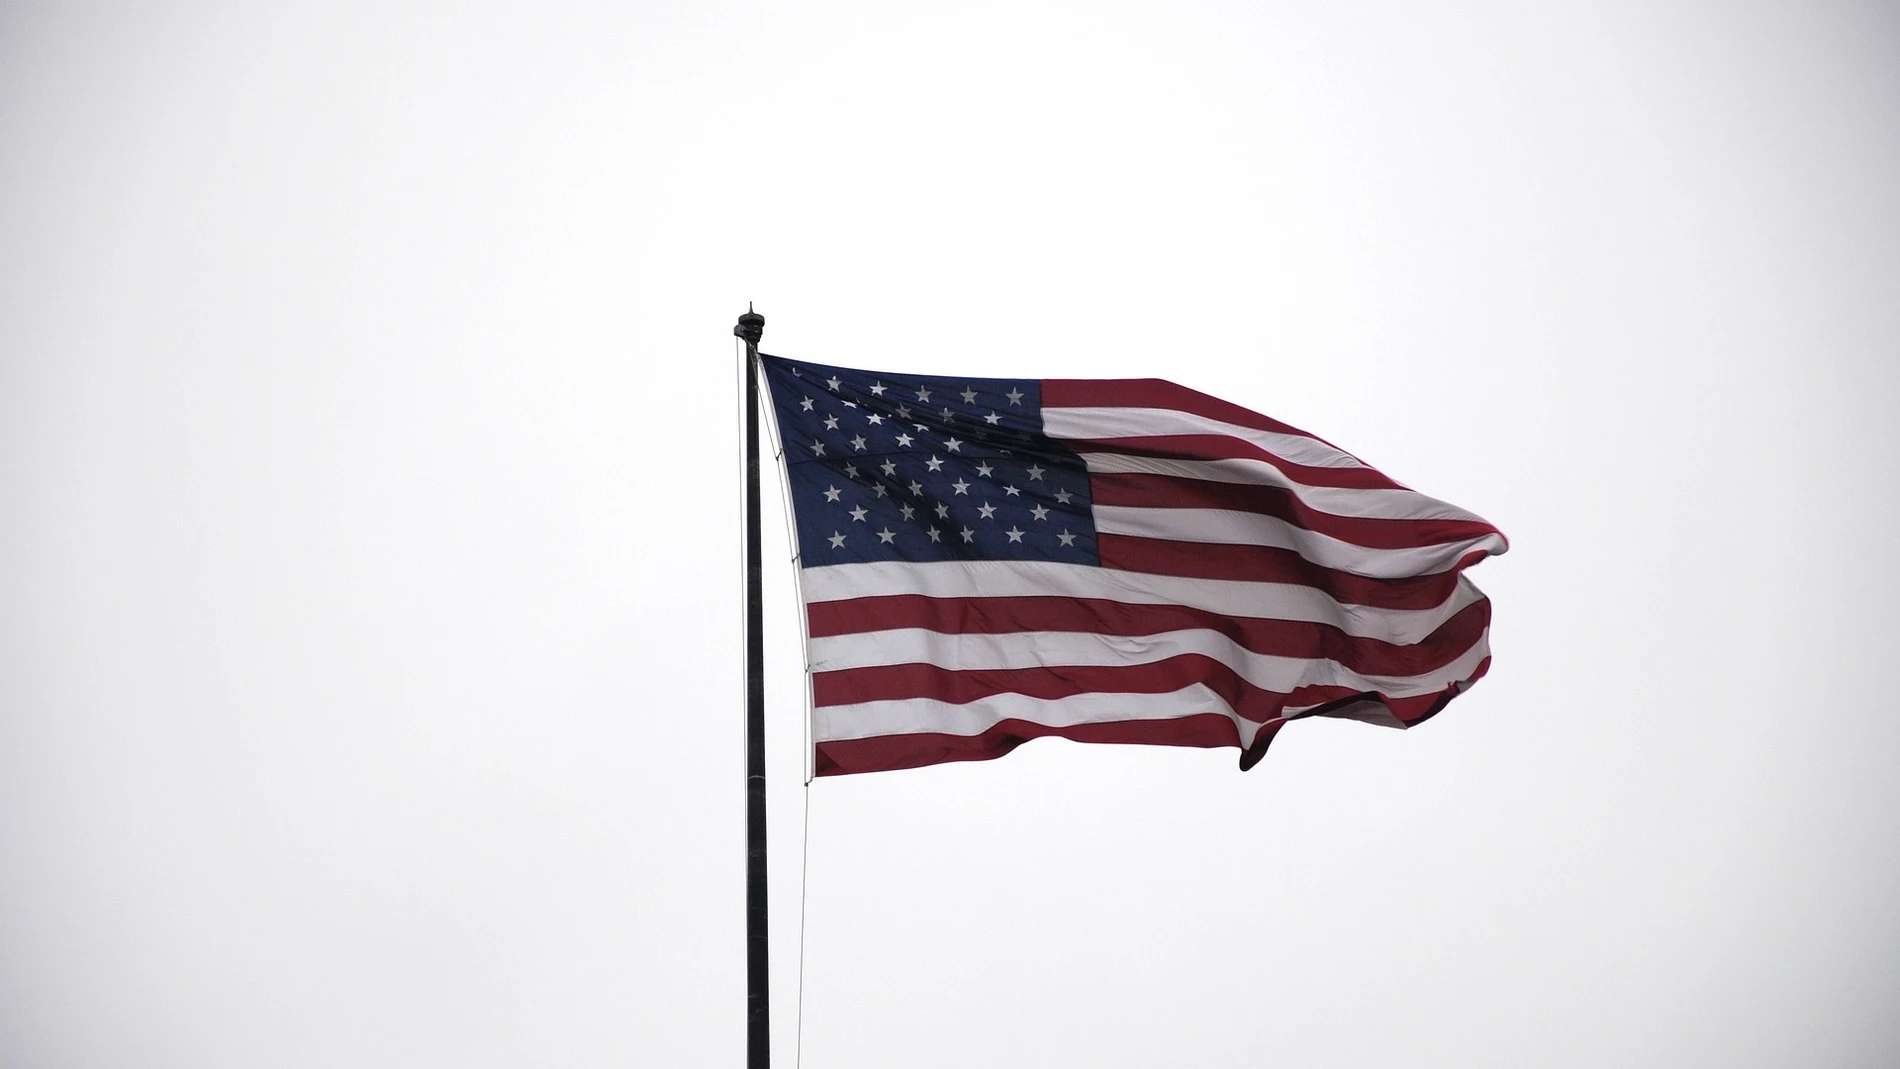 La bandera de Estados Unidos